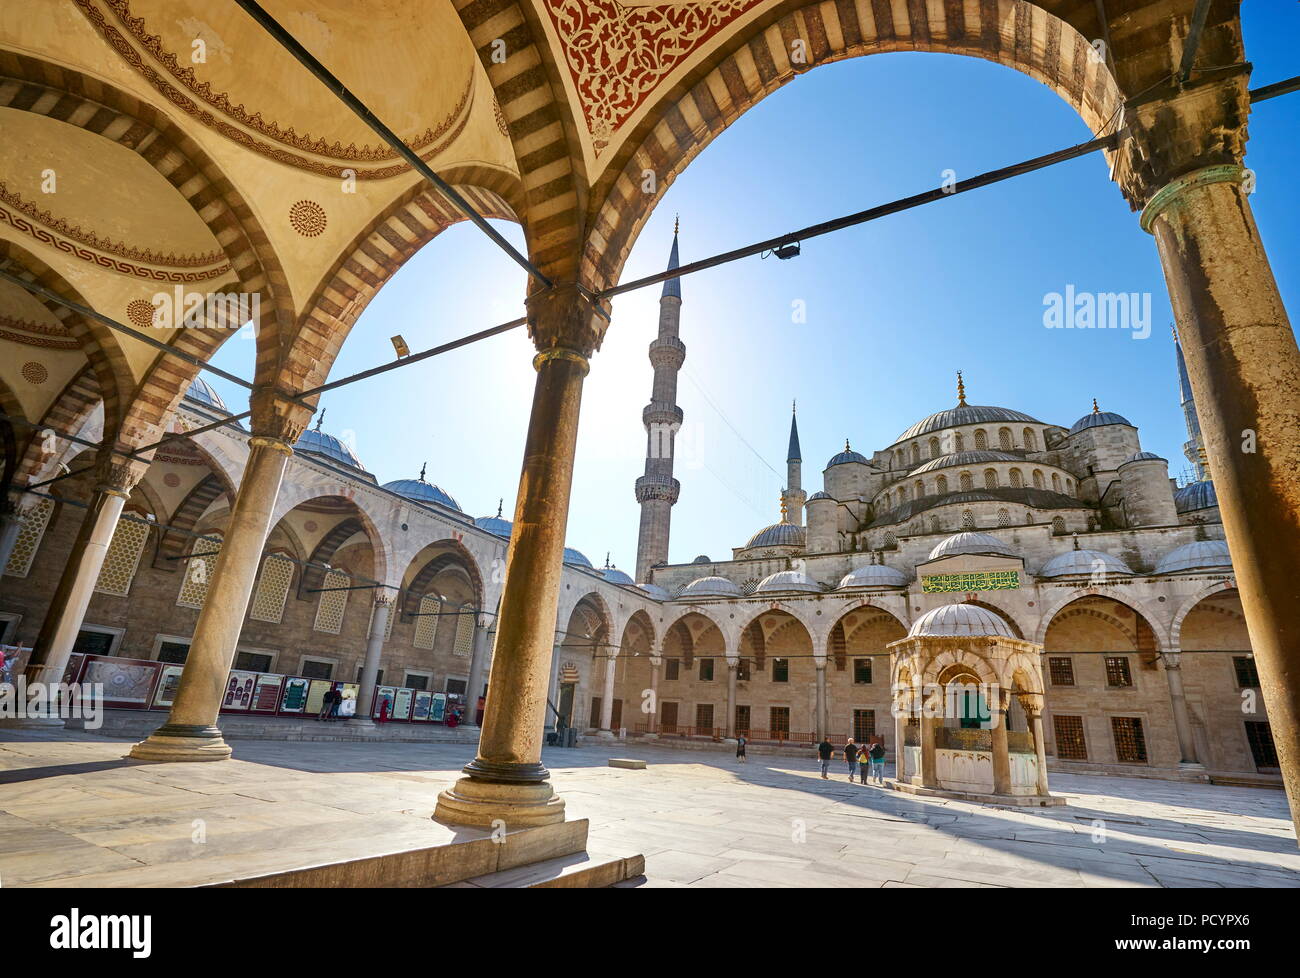 La mosquée bleue, Istanbul, Turquie Banque D'Images